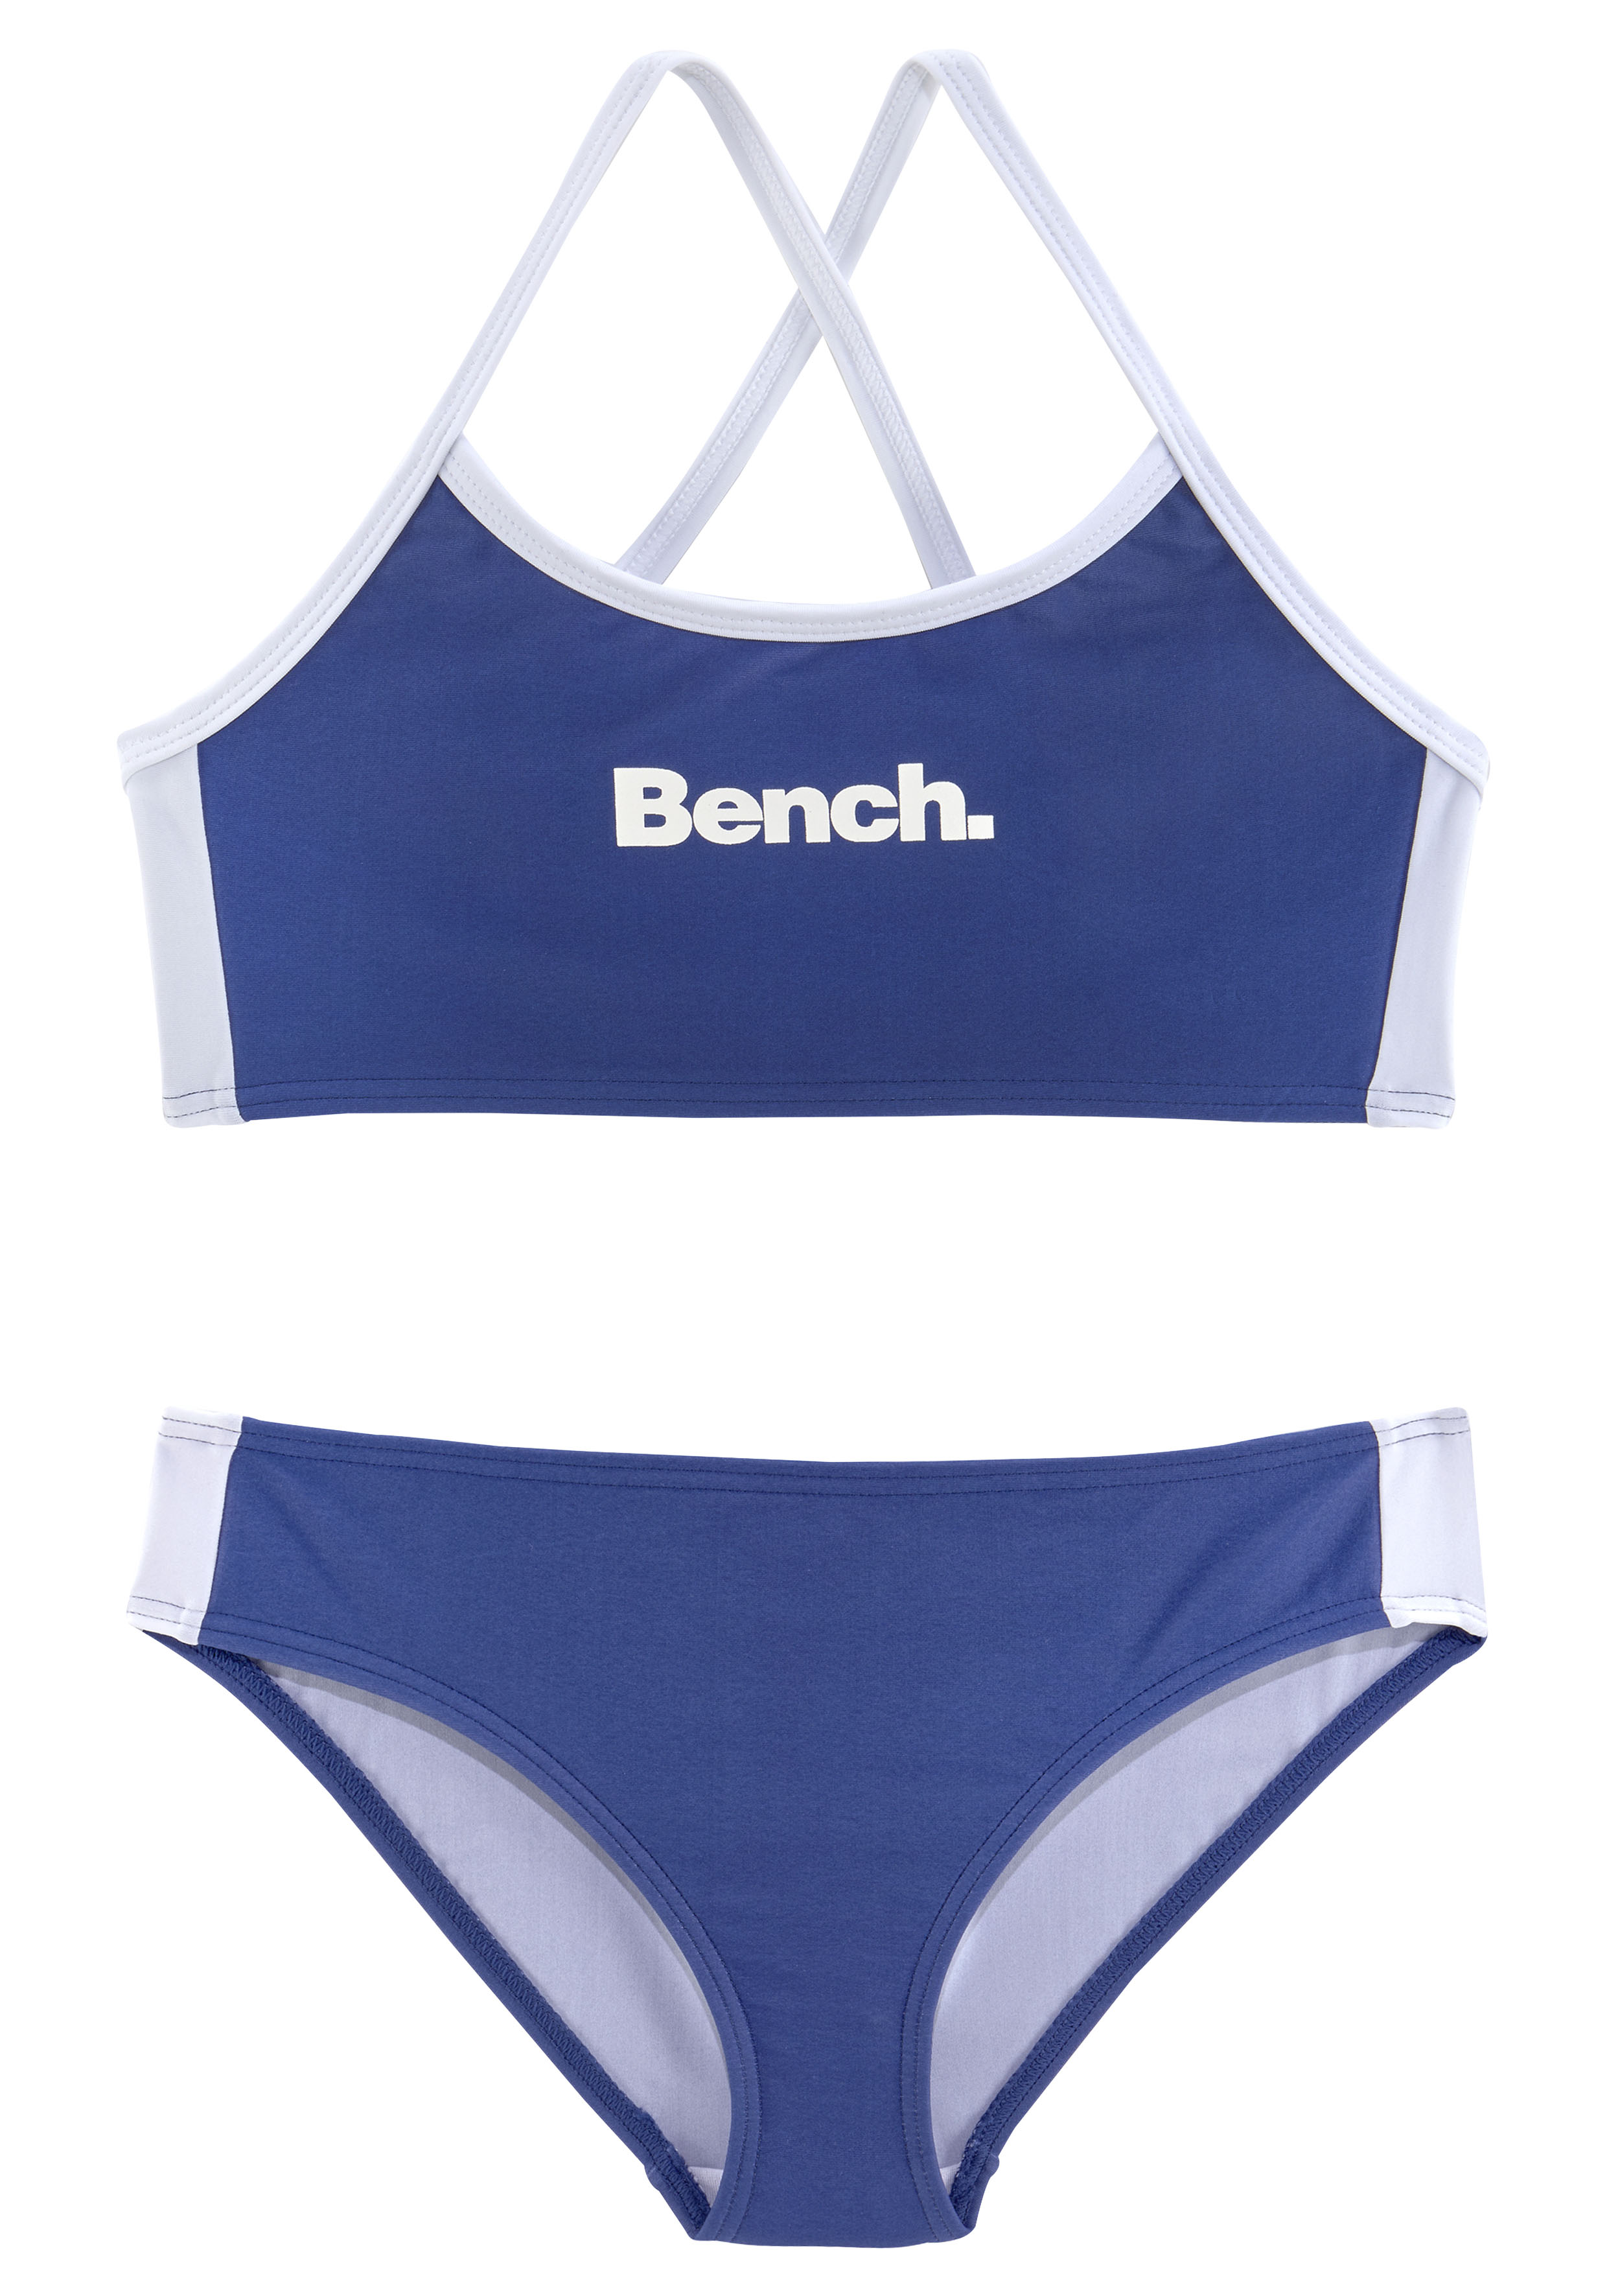 Triangel-Bikini, mit Top Hose und Bench. an bei Logoprint